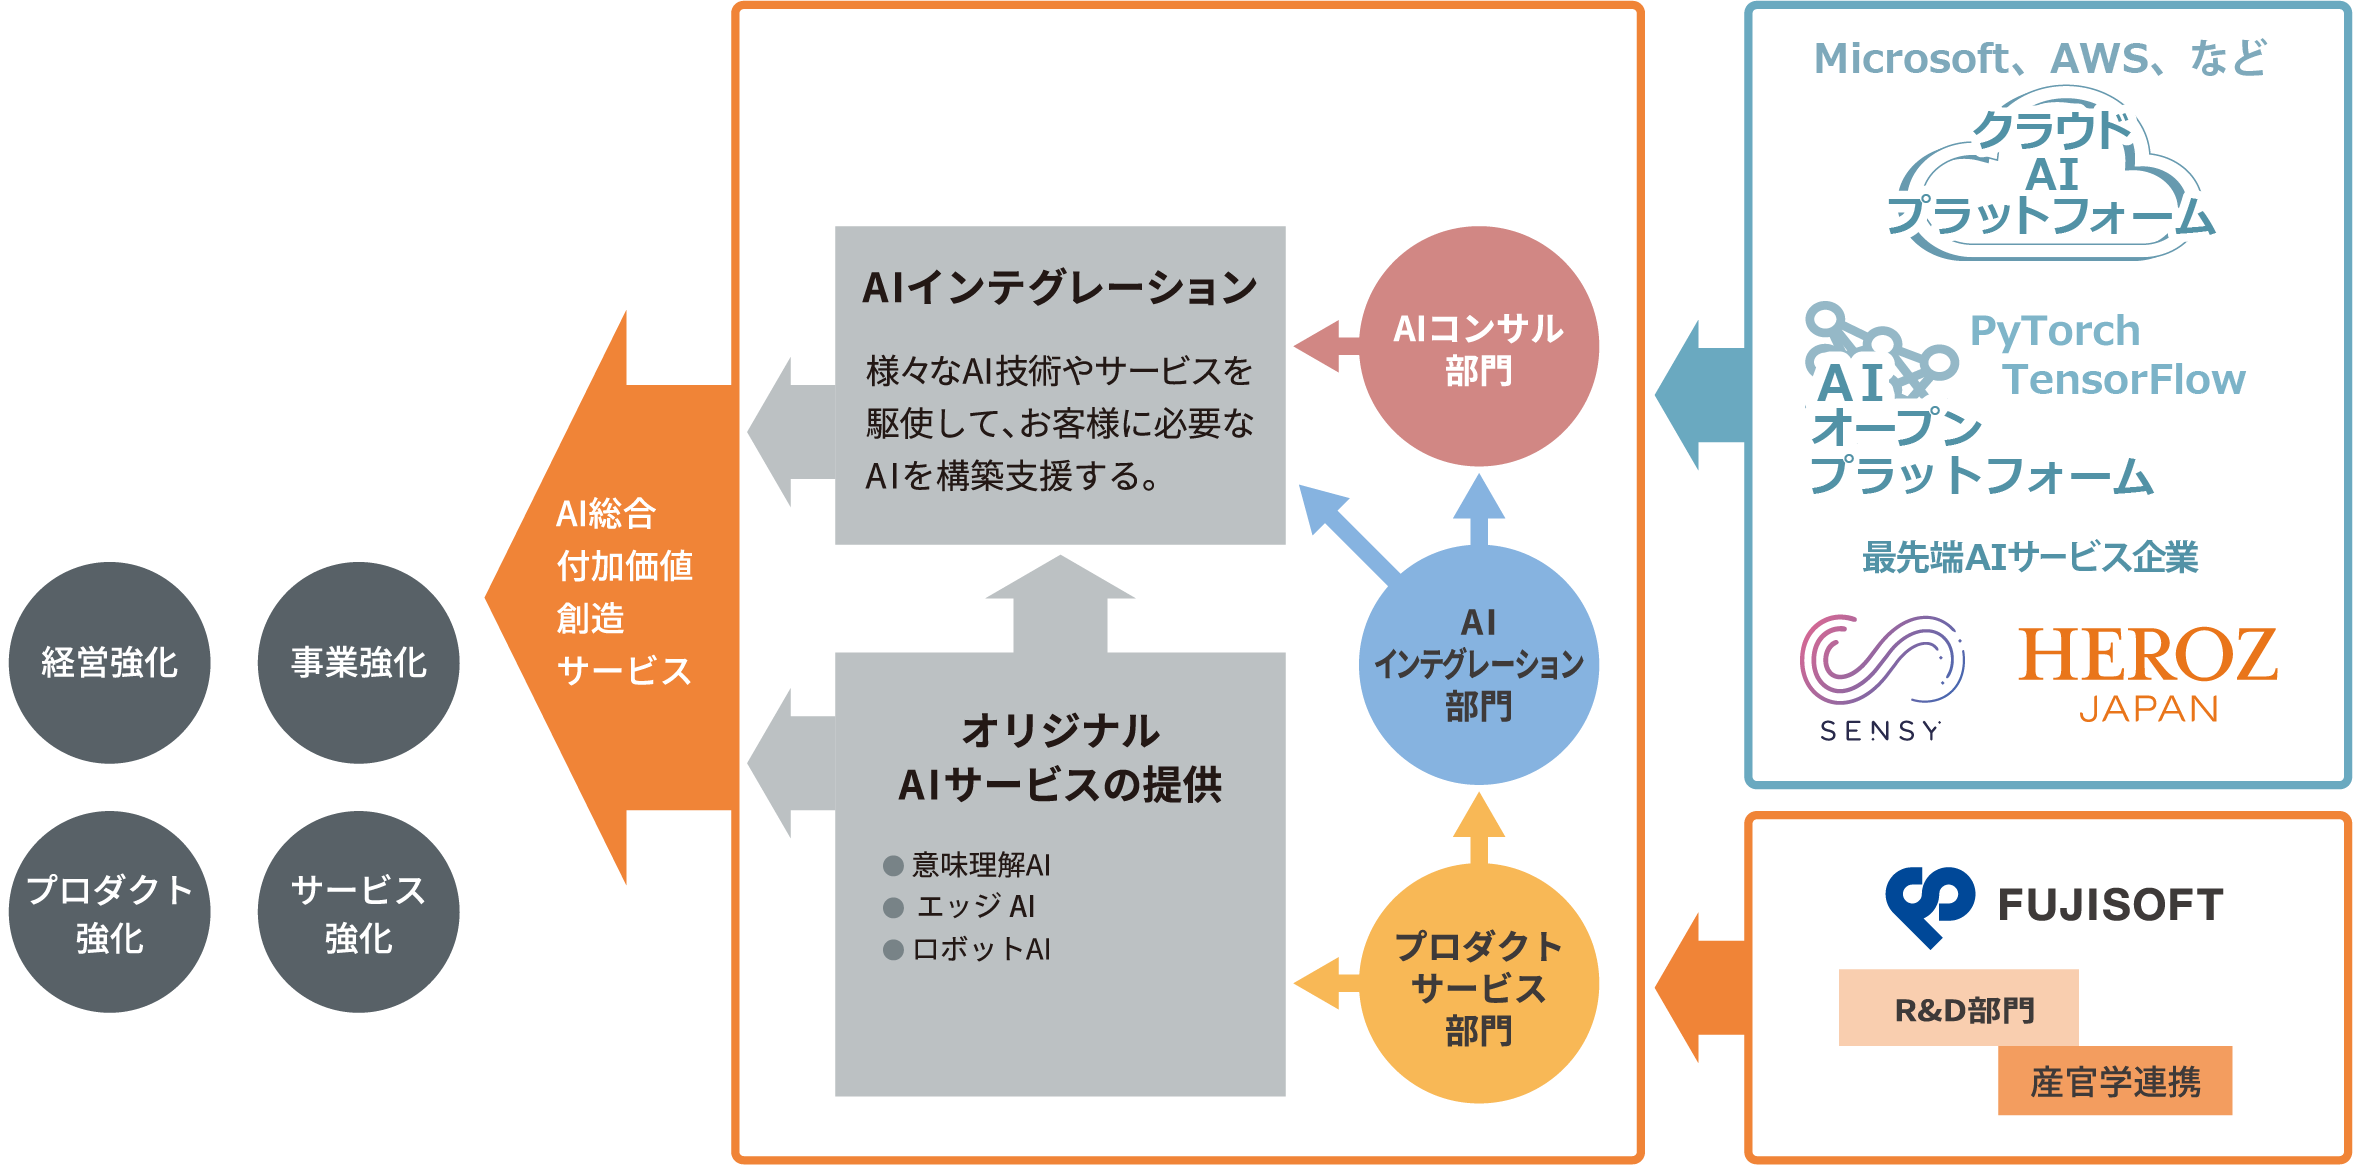 Fujisoft Ai Solutions